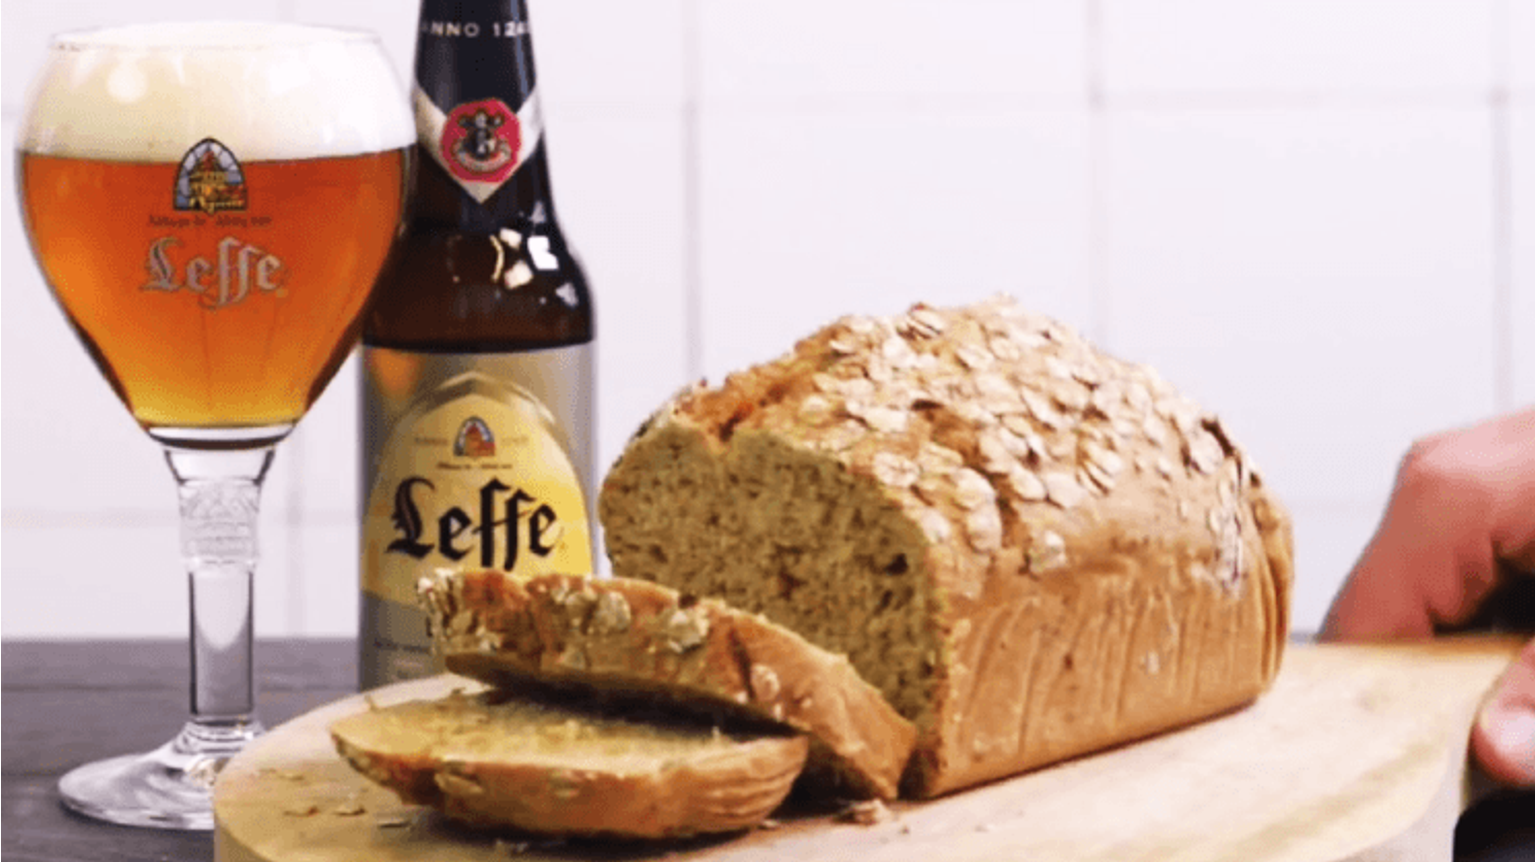 thumbnail for blog article named: Et l'histoire transforma le pain en bière